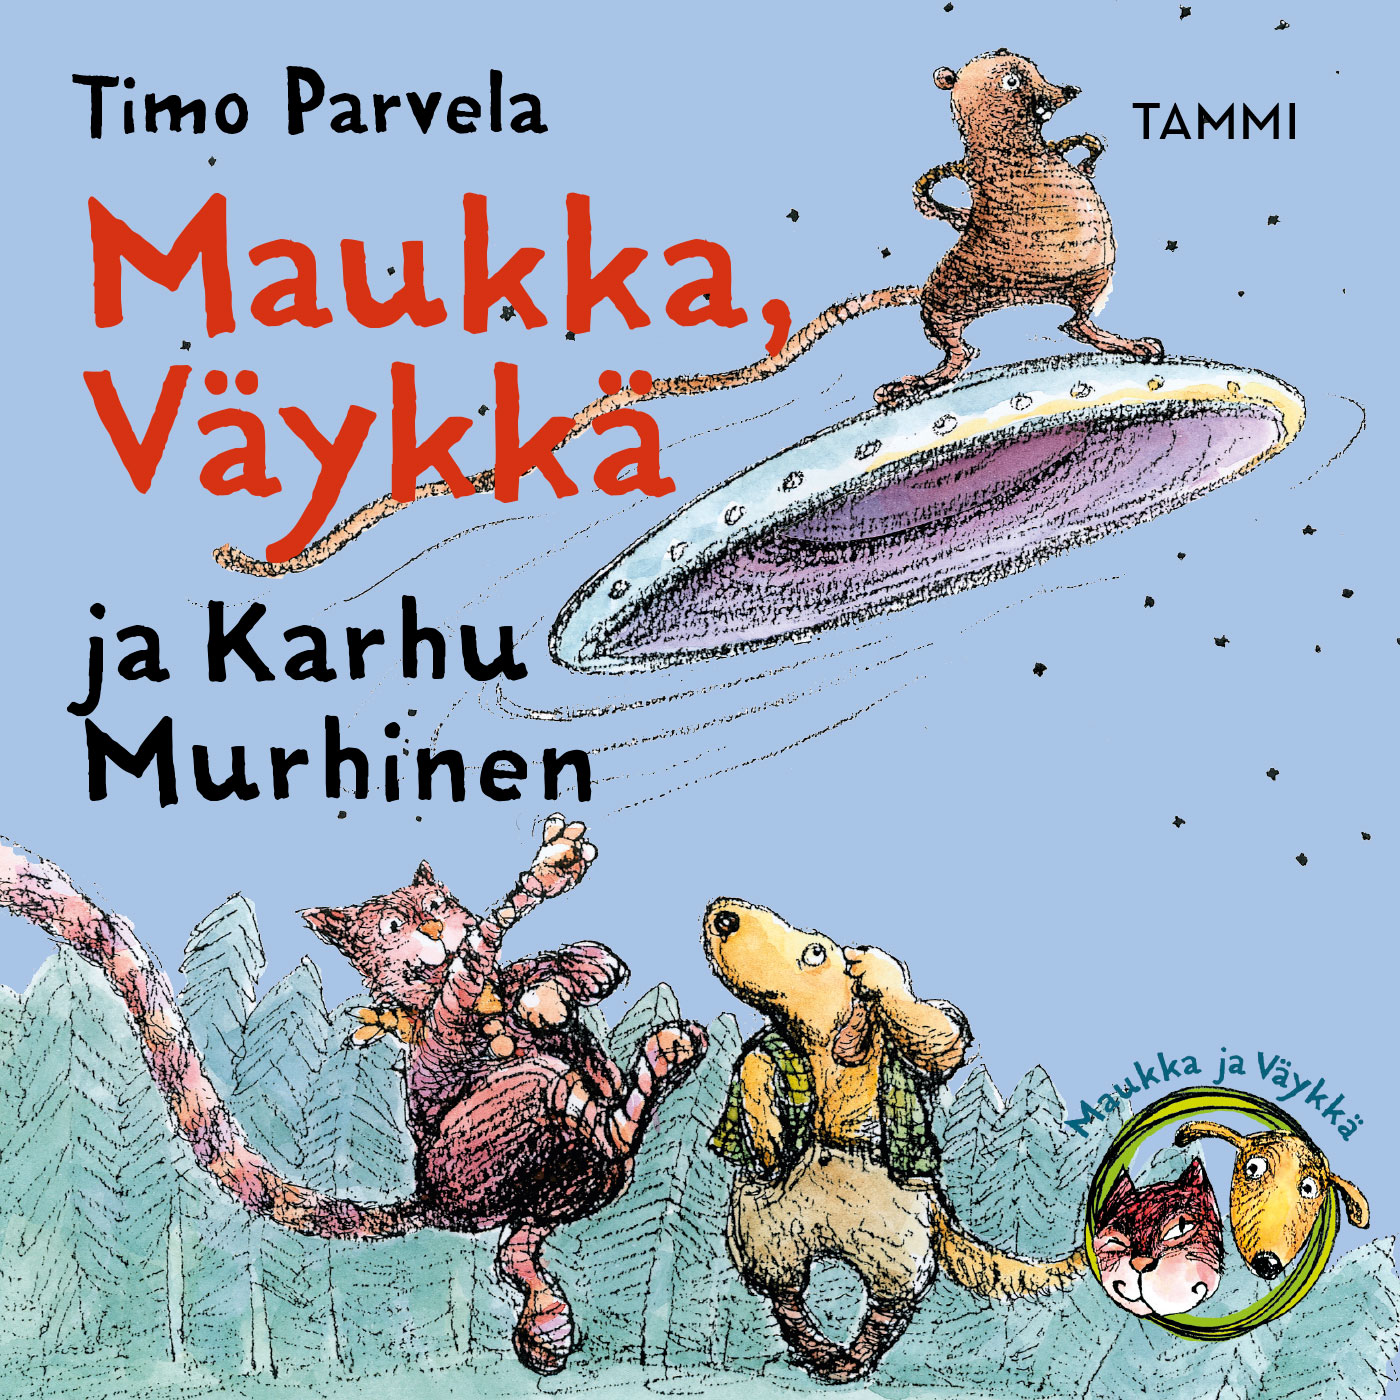 Parvela, Timo - Maukka, Väykkä ja Karhu Murhinen, audiobook